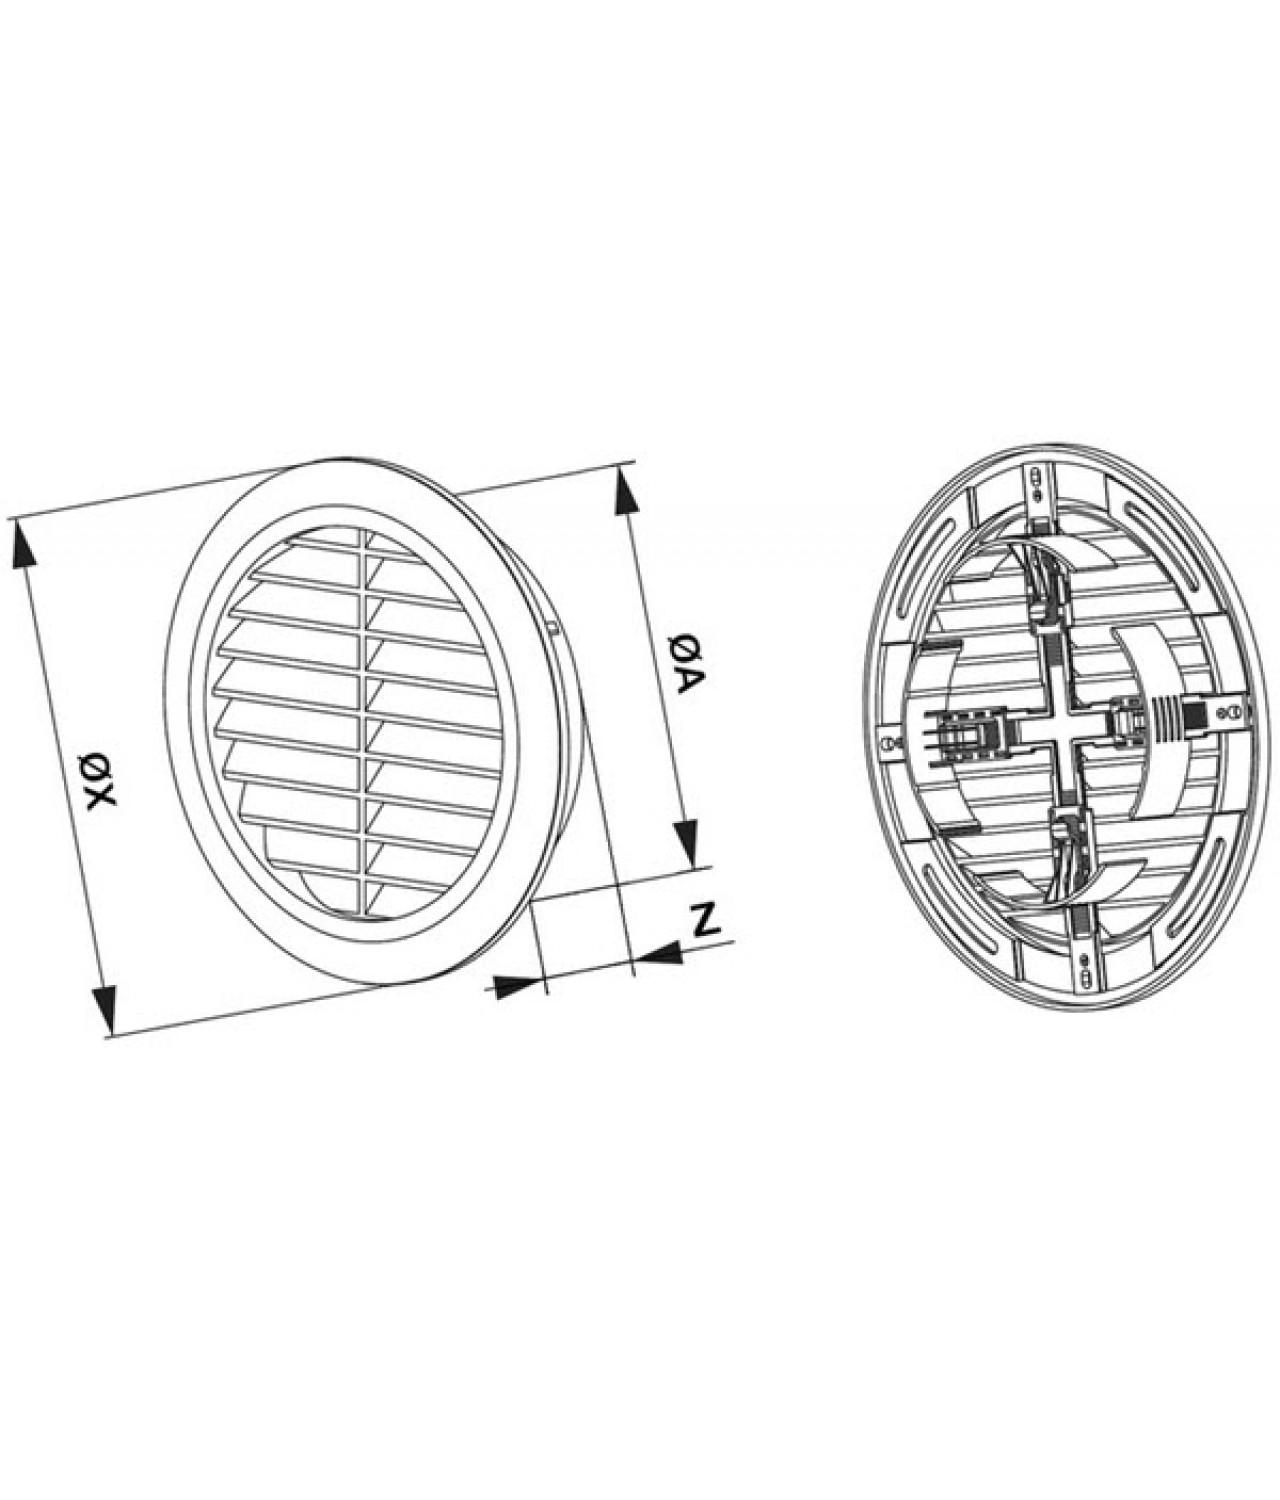 Ventilation grille GRT36BR, Ø100-150/180 mm - drawing